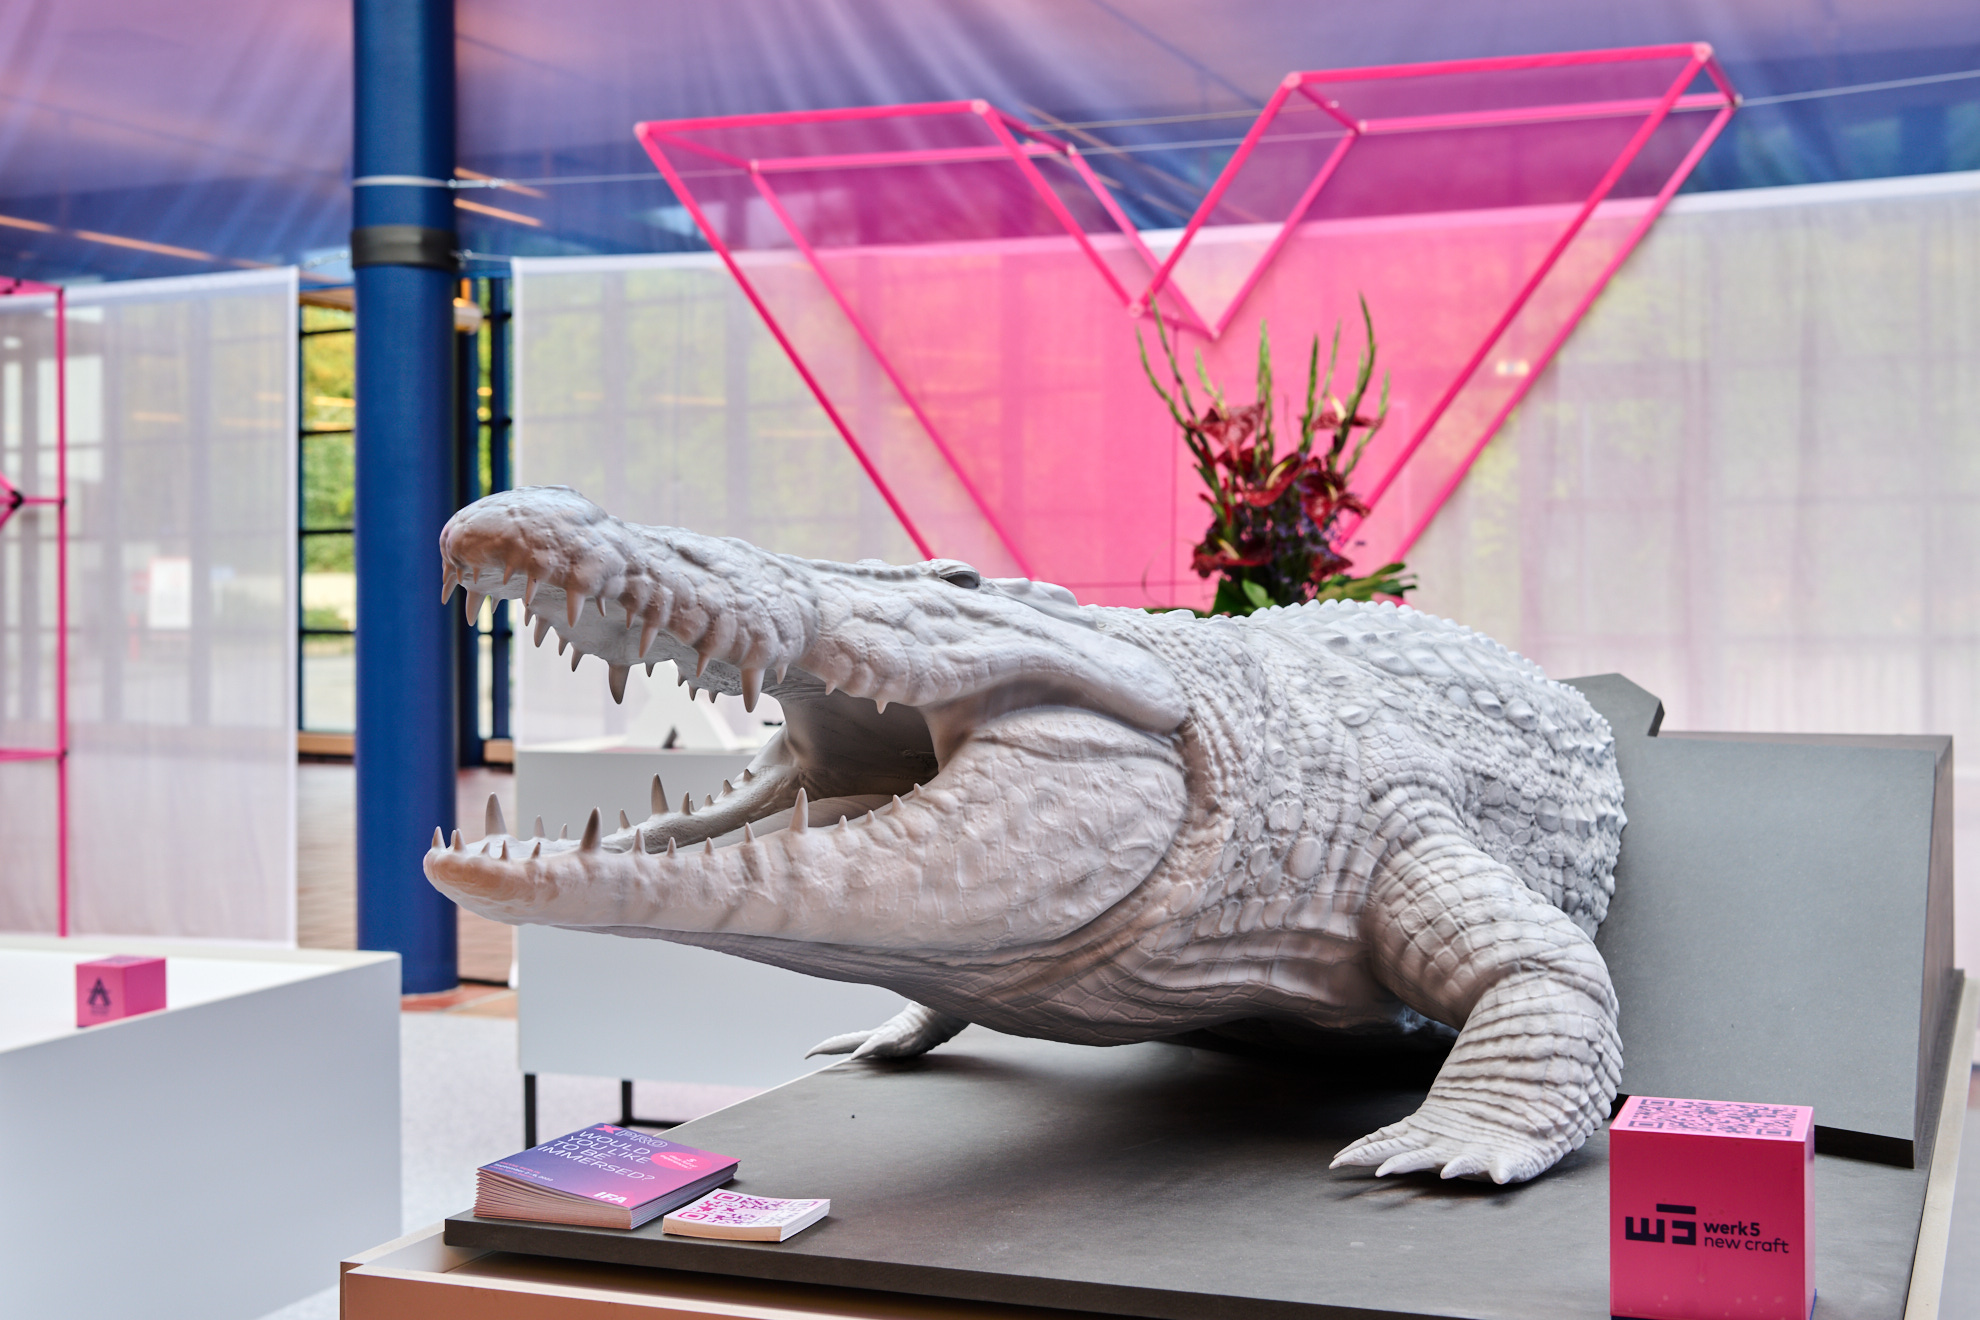 Das Krokodil von WERK 5, Ein Objekt zum Anfassen, das Ausstellungen interaktiv macht und digitale Inhalte mit haptischen Erfahrungen verbindet.